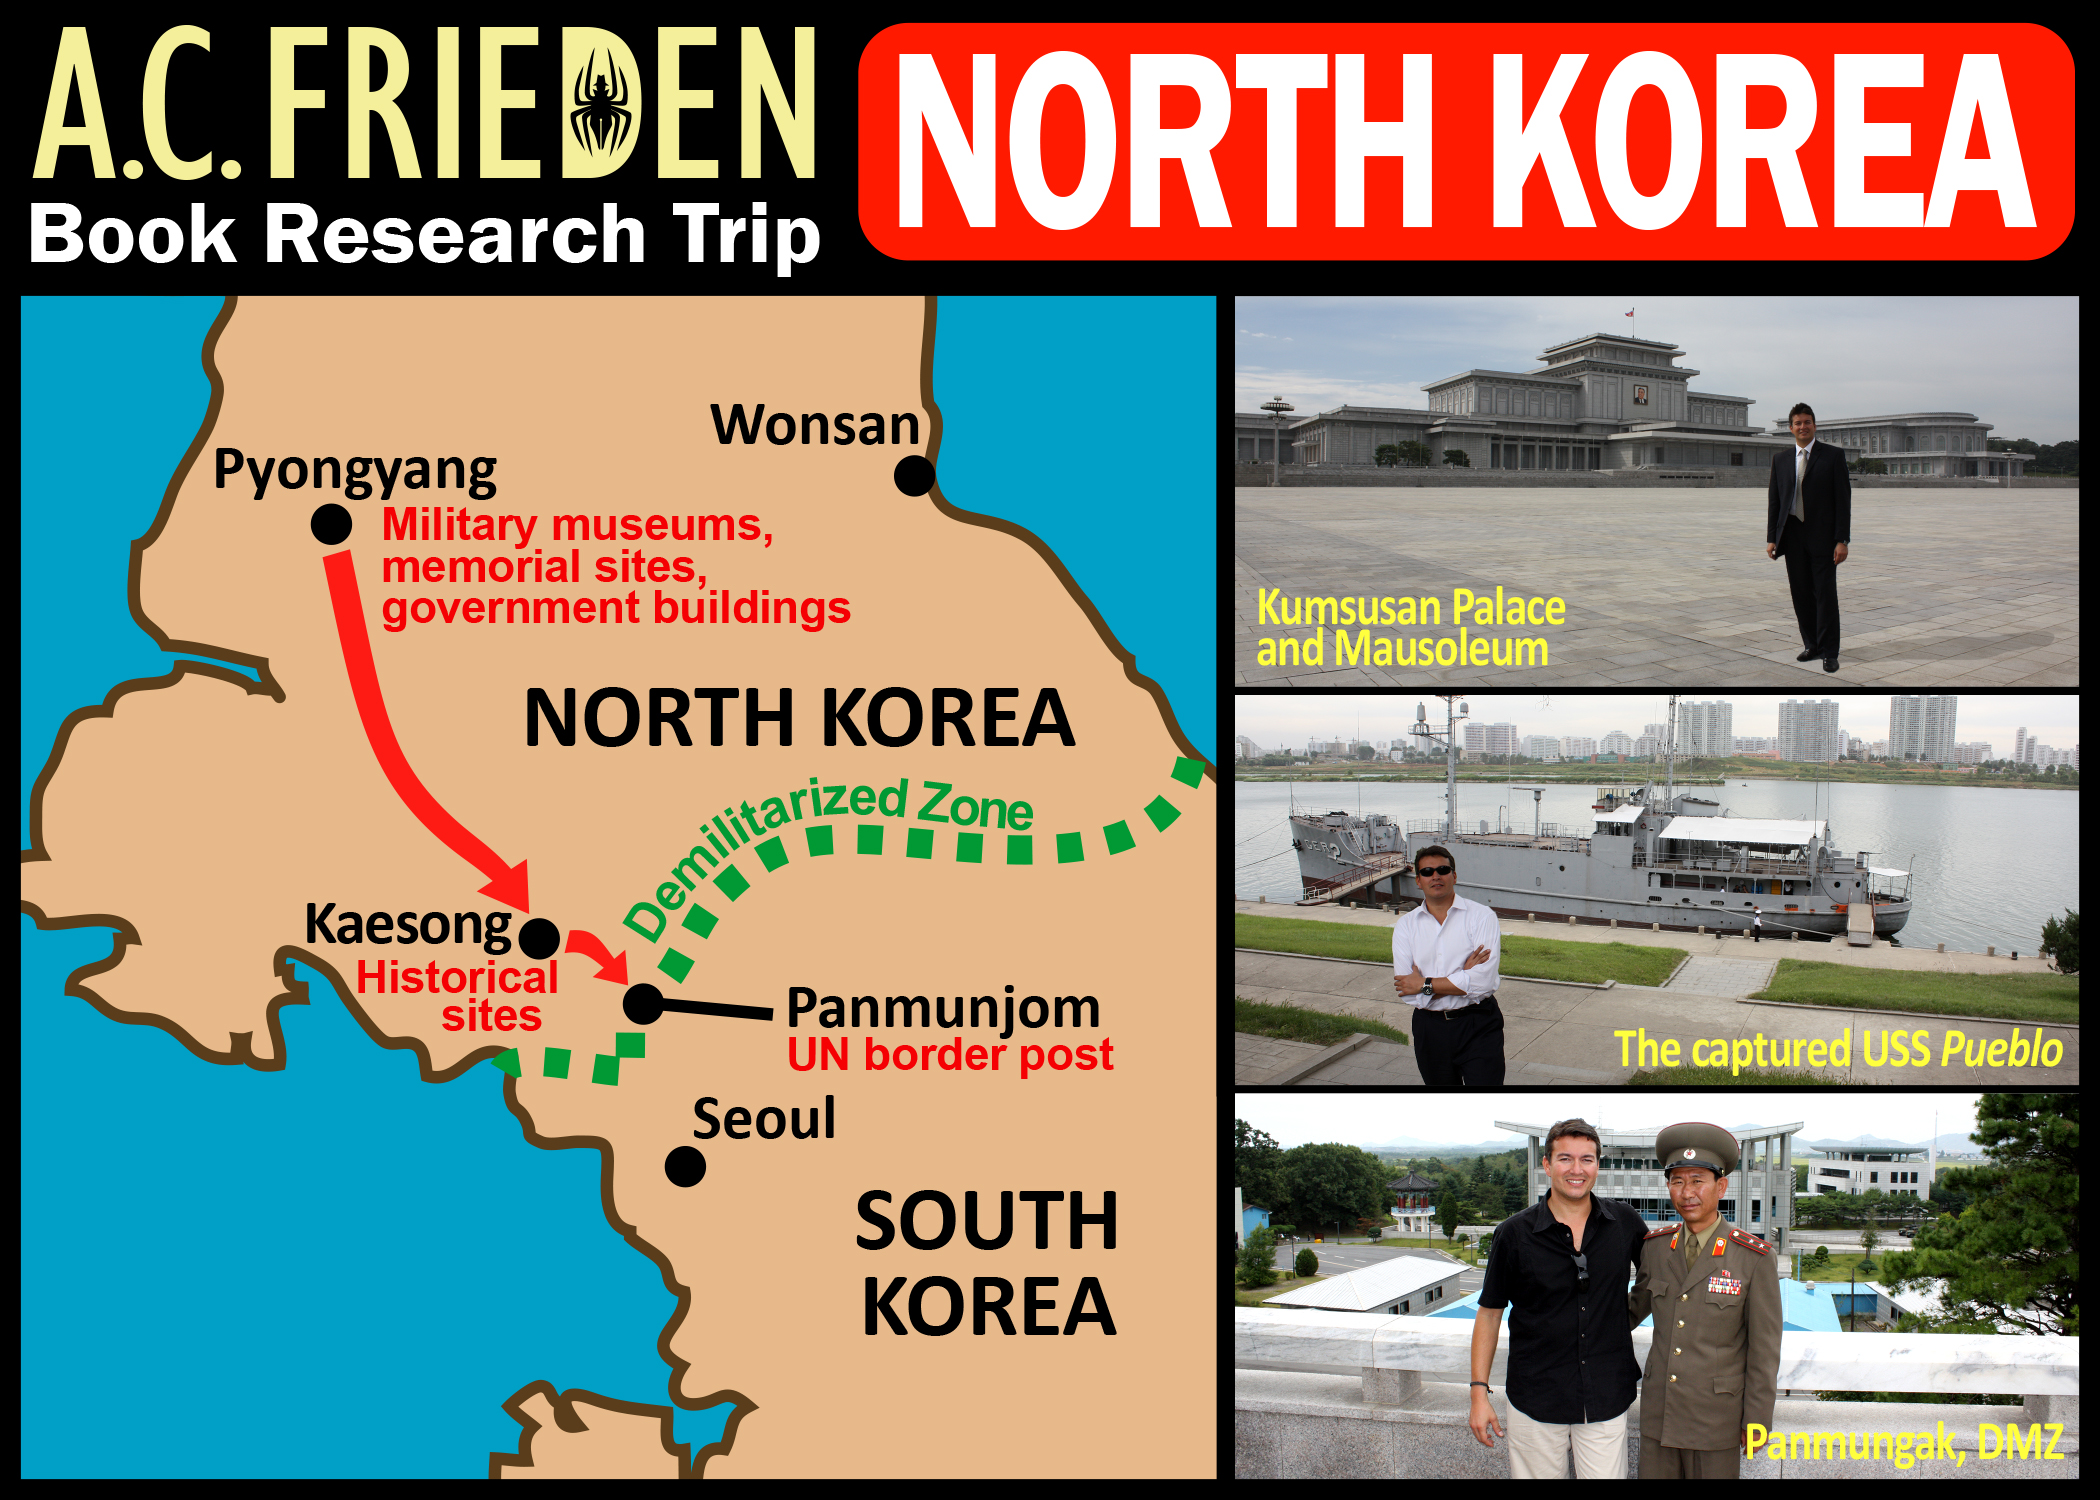 Pyongyang, Kaesong and DMZ